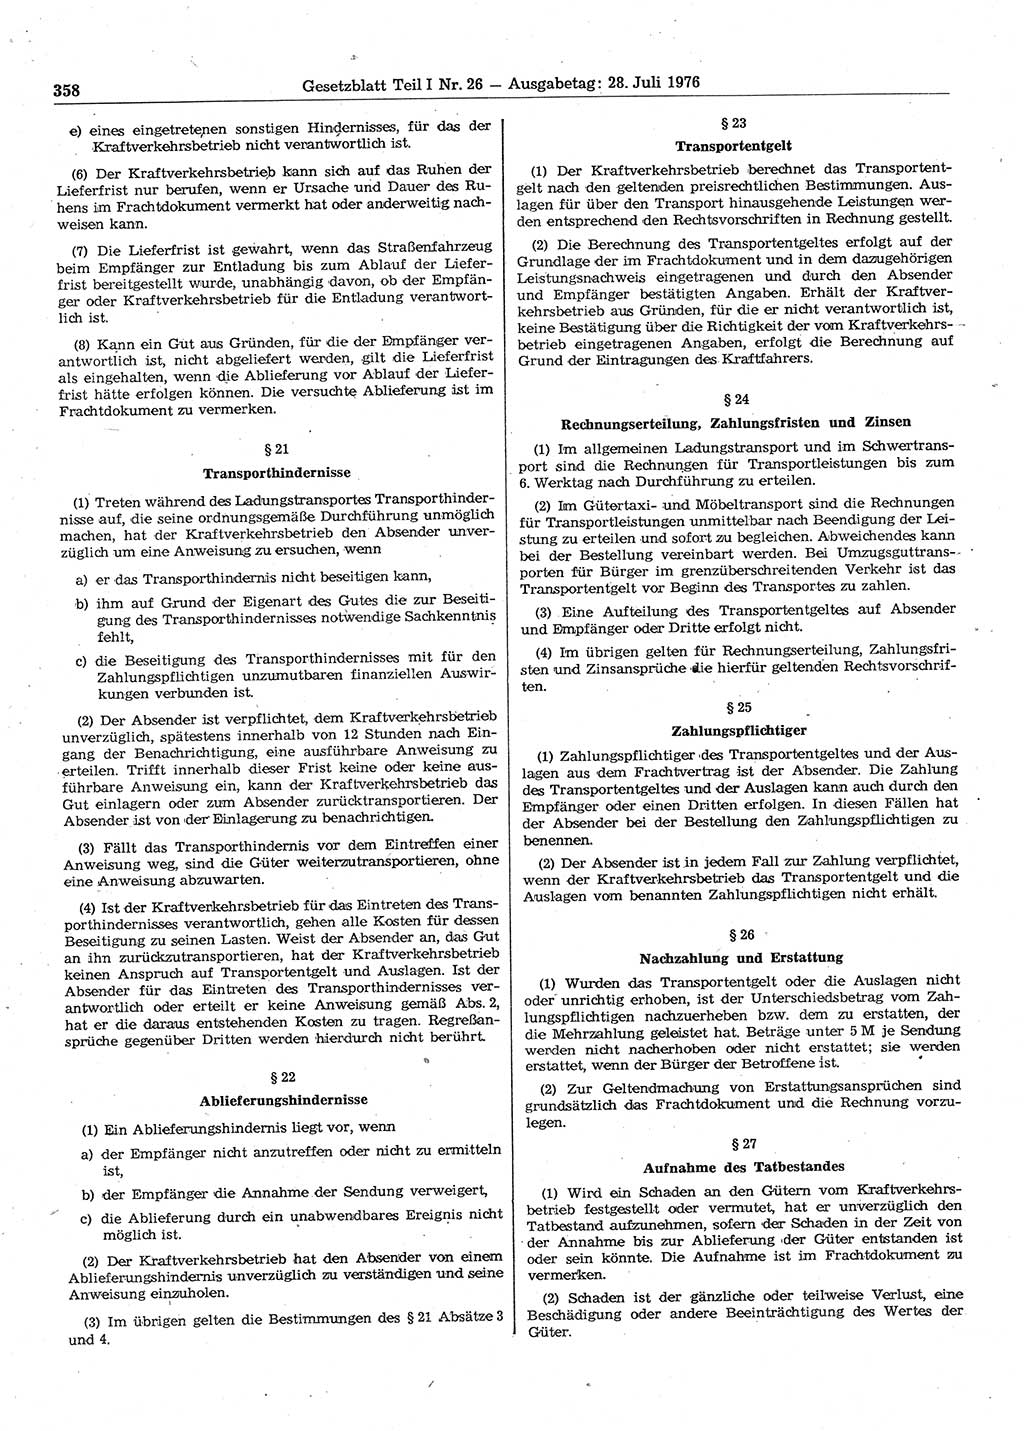 Gesetzblatt (GBl.) der Deutschen Demokratischen Republik (DDR) Teil Ⅰ 1976, Seite 358 (GBl. DDR Ⅰ 1976, S. 358)